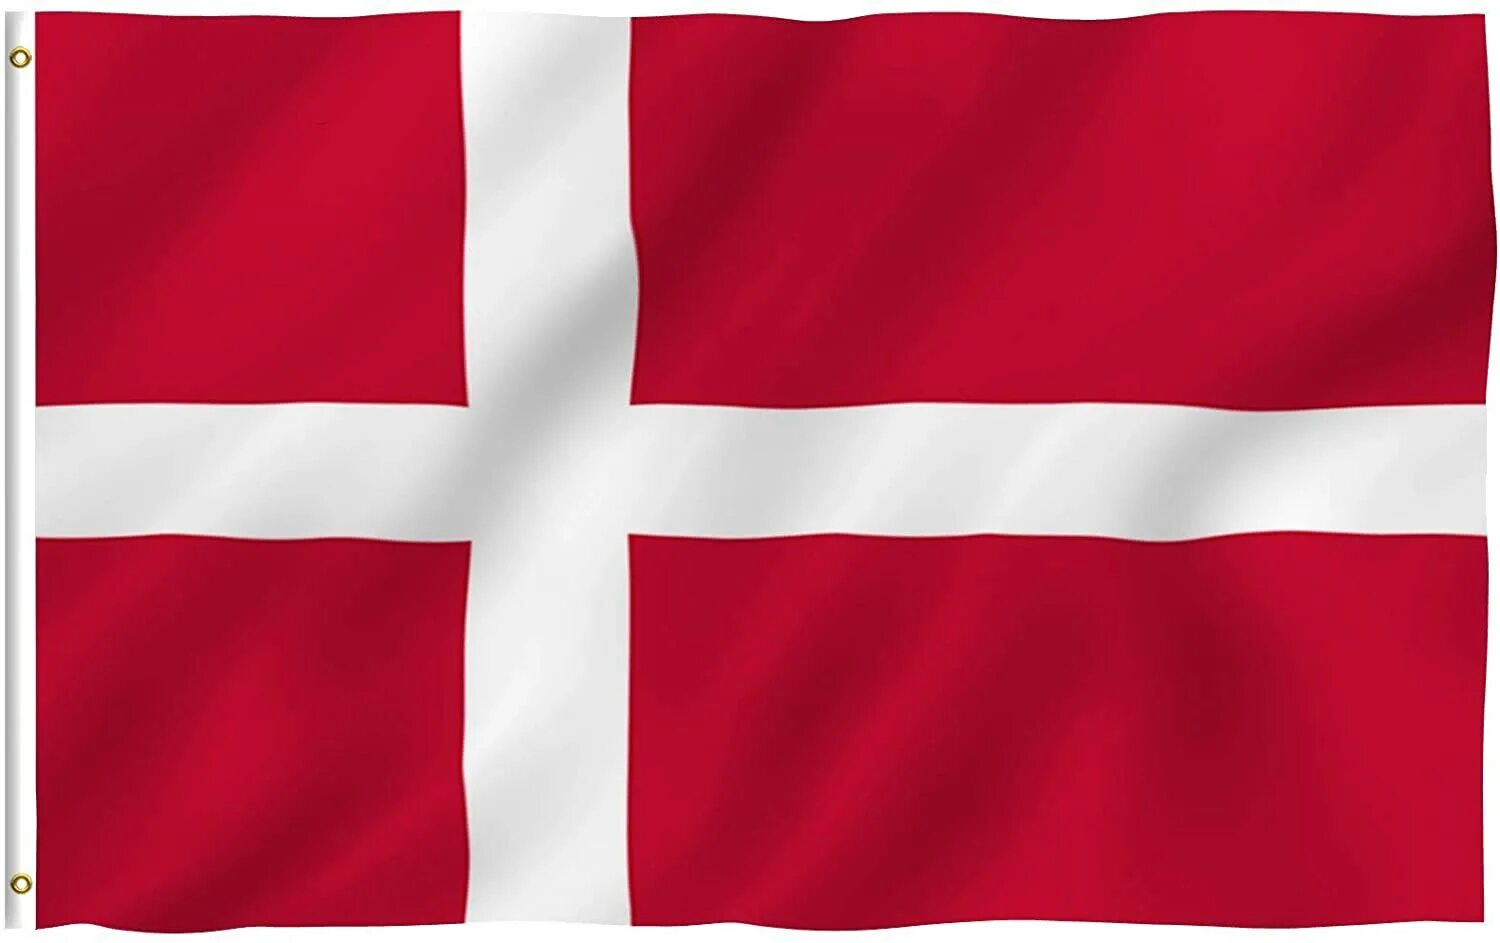 Как выглядит флаг дании. Флаг Дании. Флаг Дании 1939. Денмарк флаг.